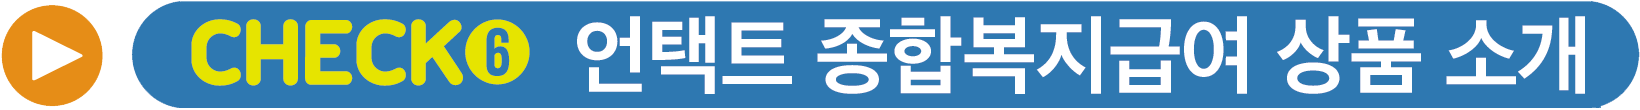 CHECK 6 언택트 종합복지급여 상품 소개